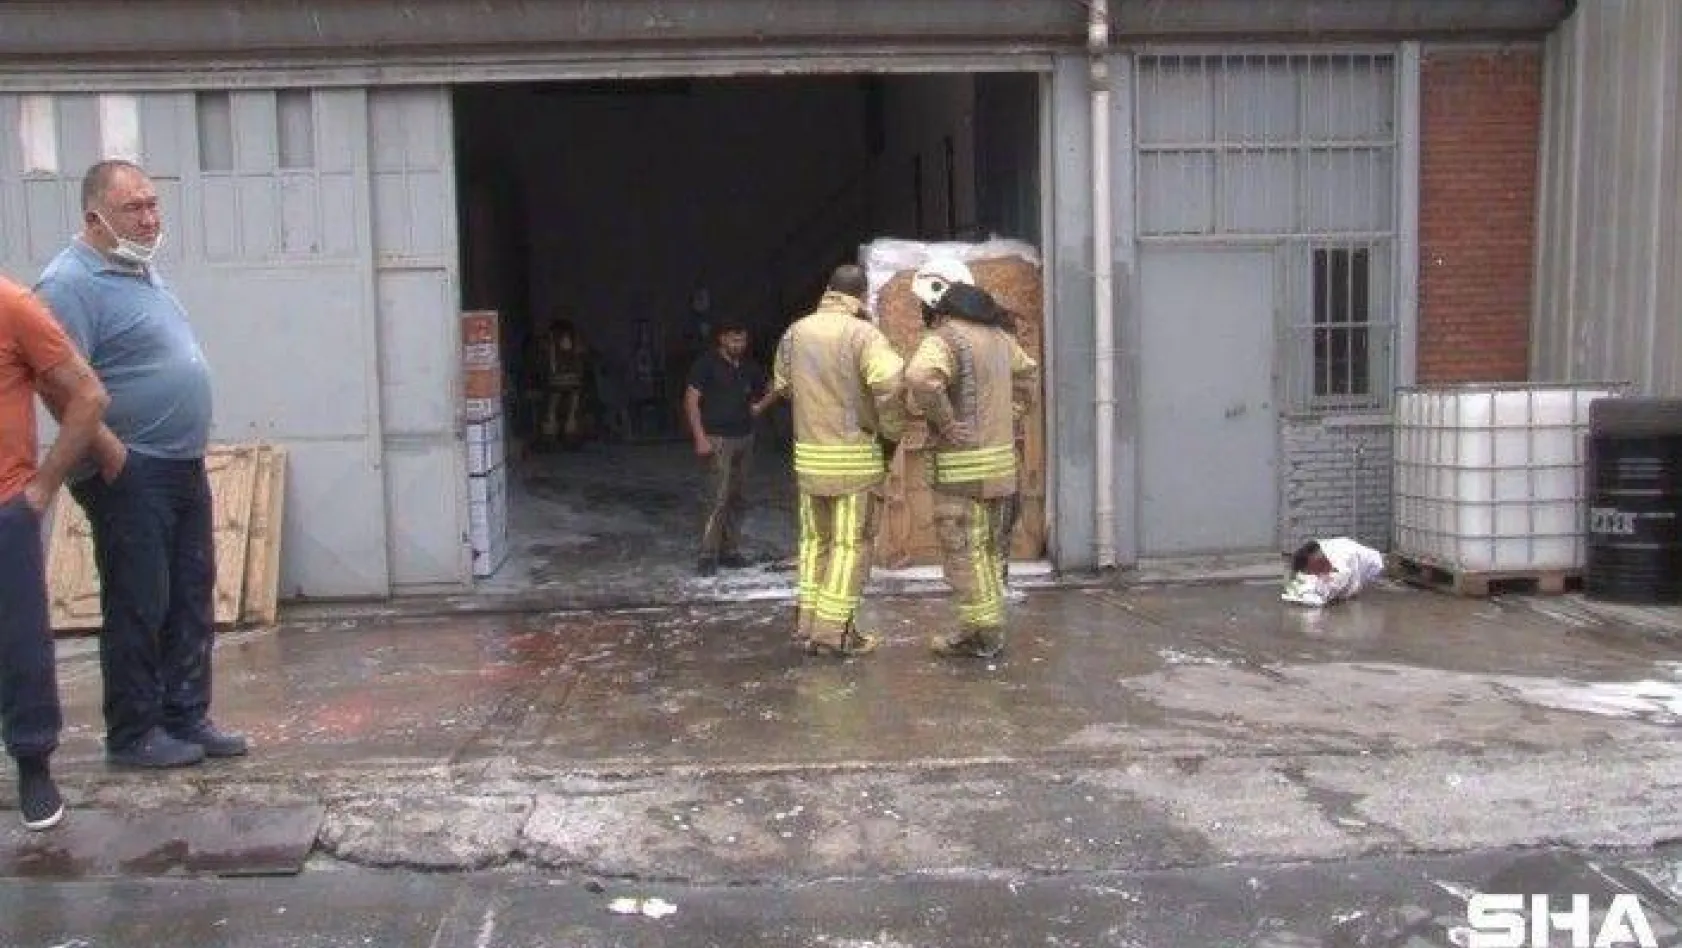 Sanayi sitesinde yangın çıktı, yangına müdahale etmeye çalışan işçi yaralandı